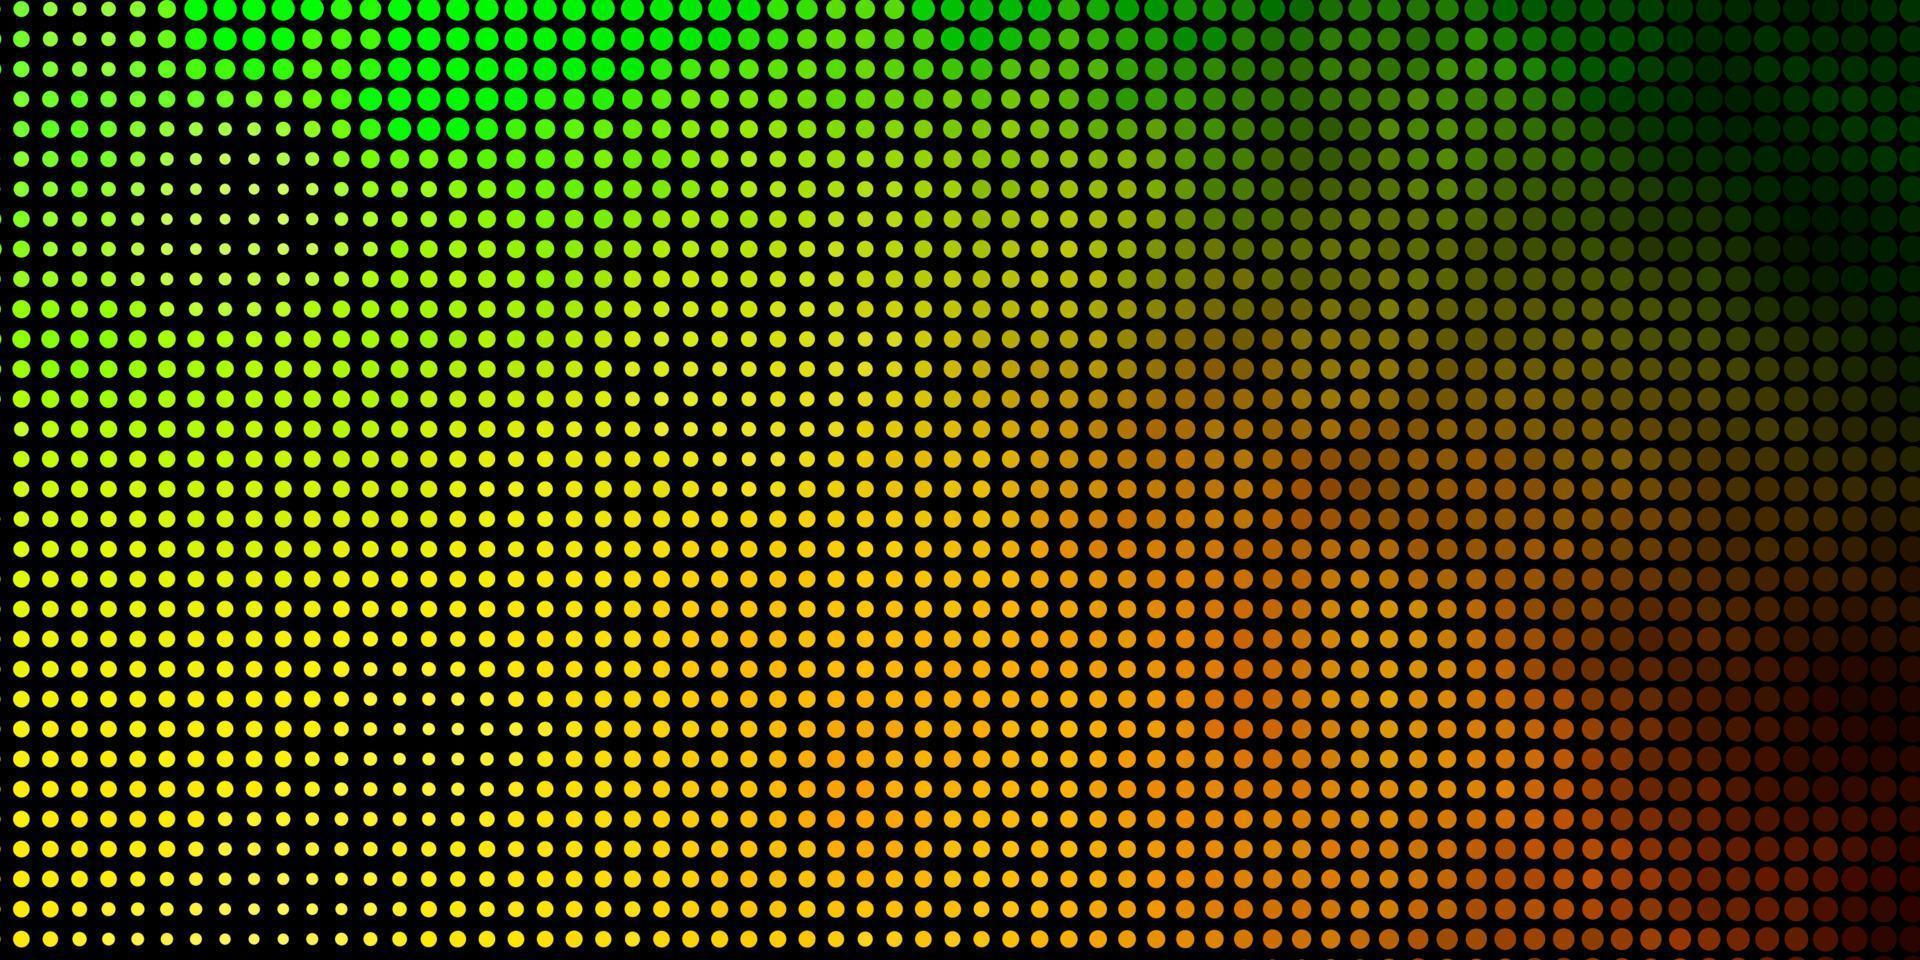 mörkgrön, gul vektorbakgrund med prickar. vektor